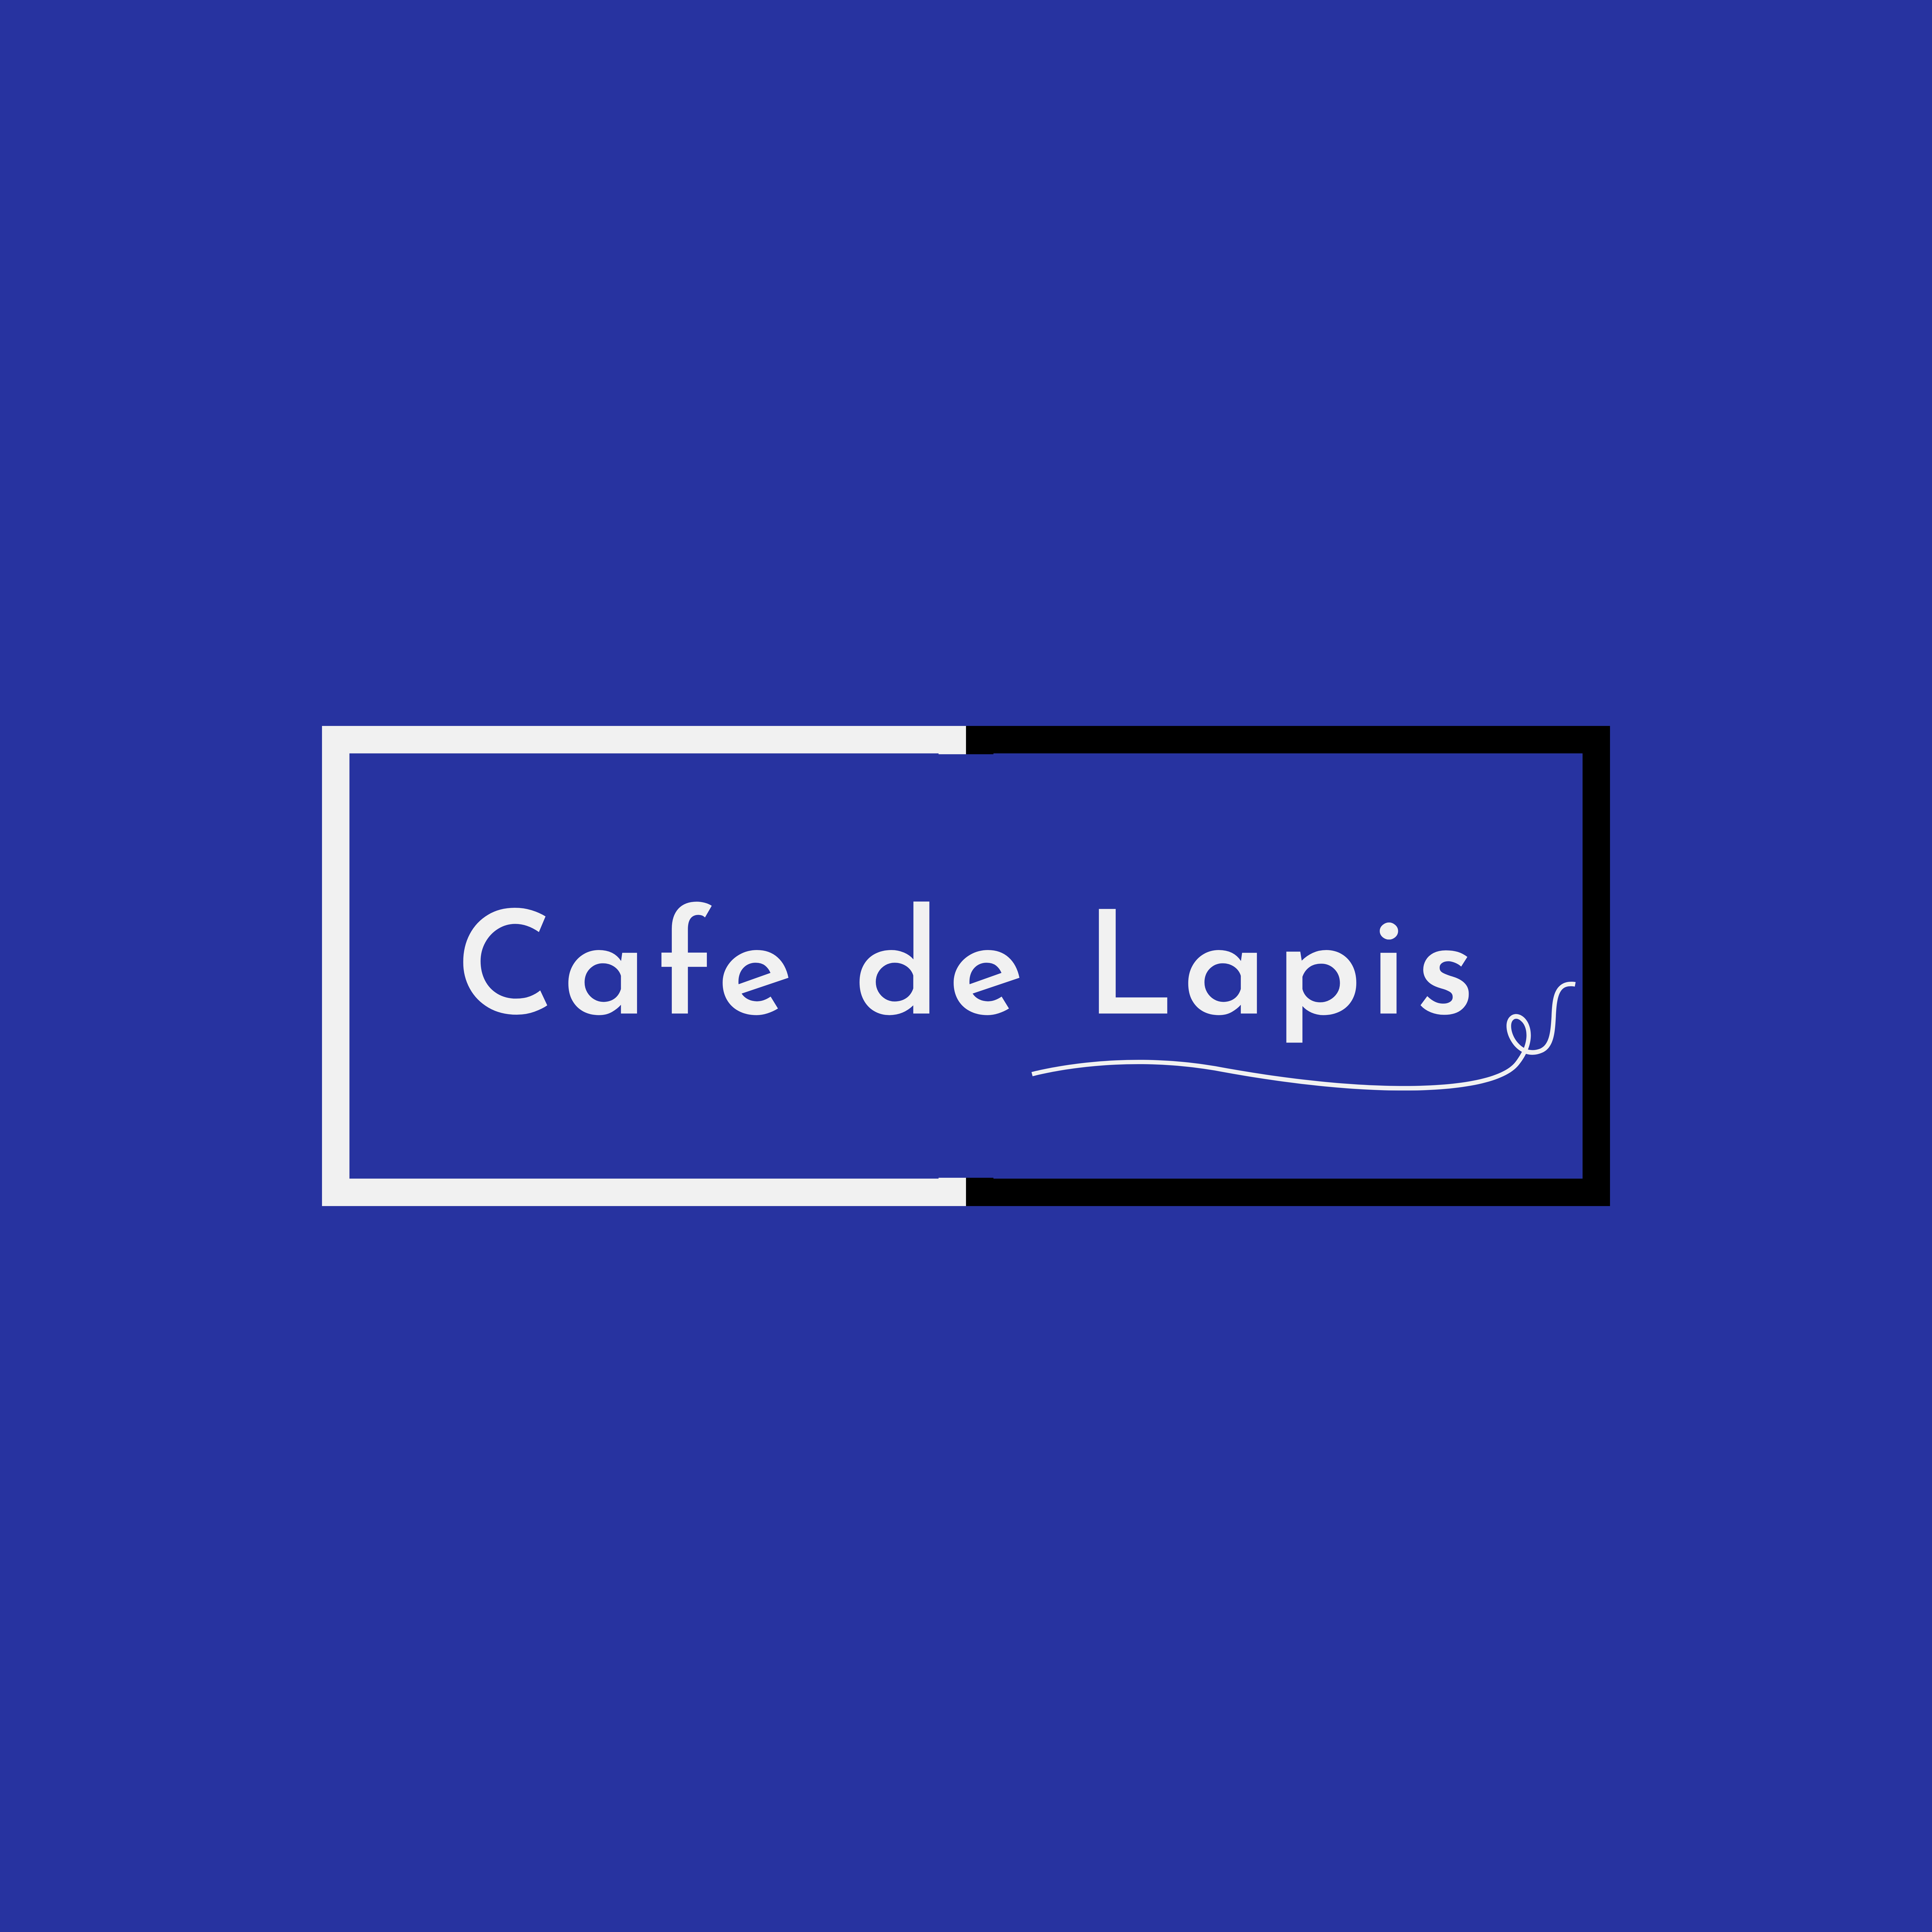 Cafe de Lapis(Cafe de Lapis)